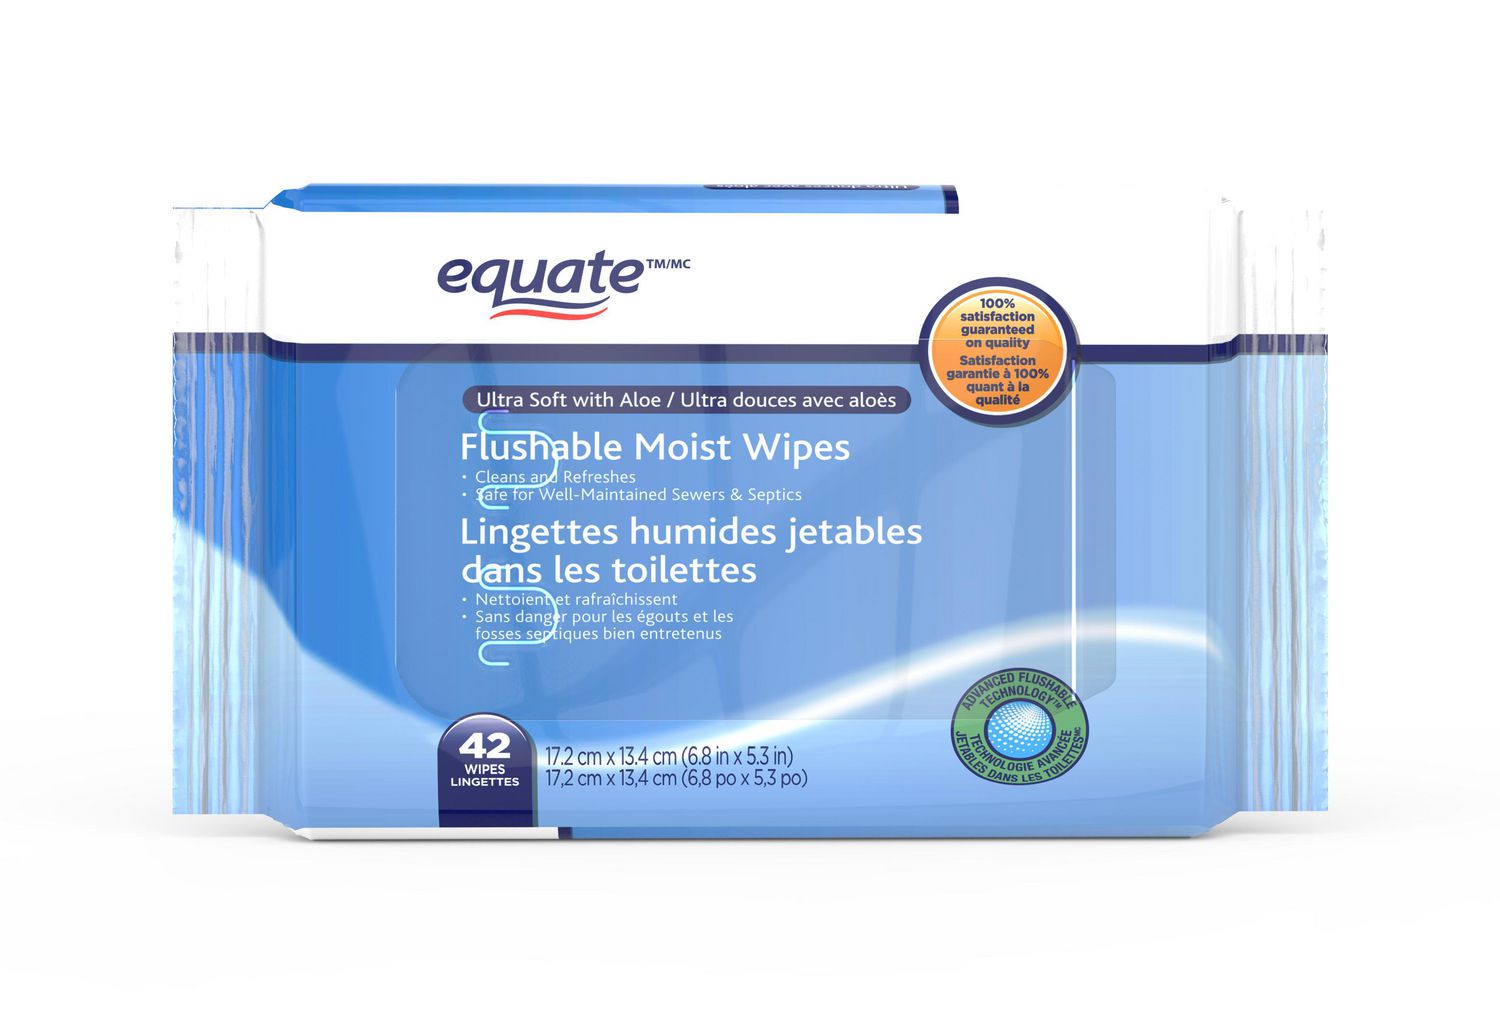 Equate Lingettes humides jetables dans les toilettes, 210 lingettes 